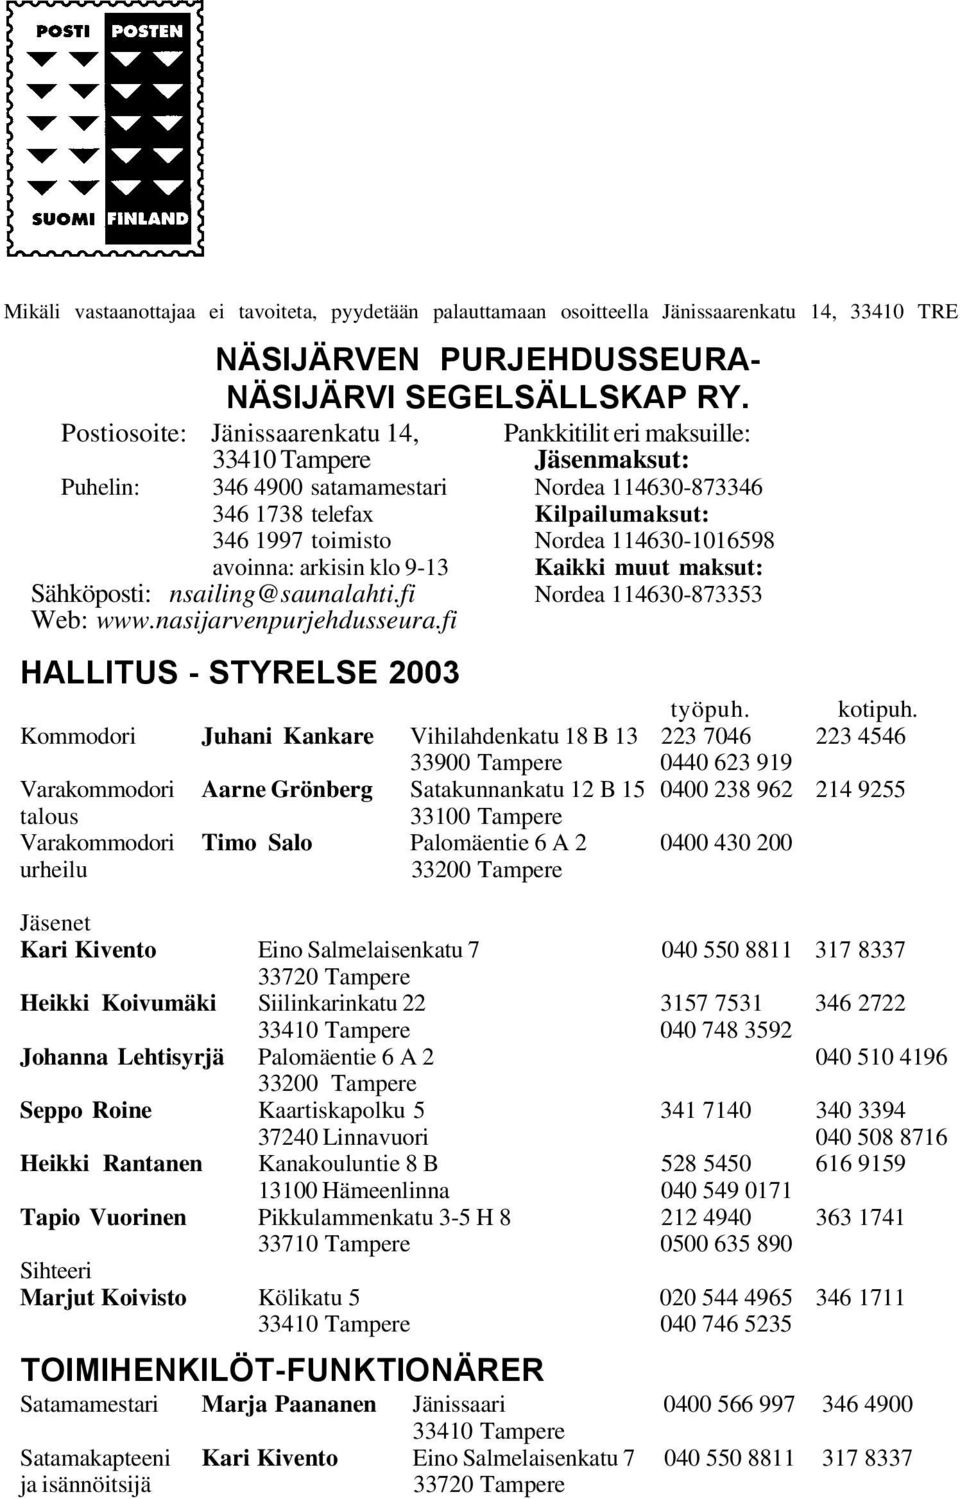 114630-873346 Kilpailumaksut: Nordea 114630-1016598 Kaikki muut maksut: Sähköposti: nsailing@saunalahti.fi Nordea 114630-873353 Web: www.nasijarvenpurjehdusseura.fi HALLITUS - STYRELSE 2003 työpuh.